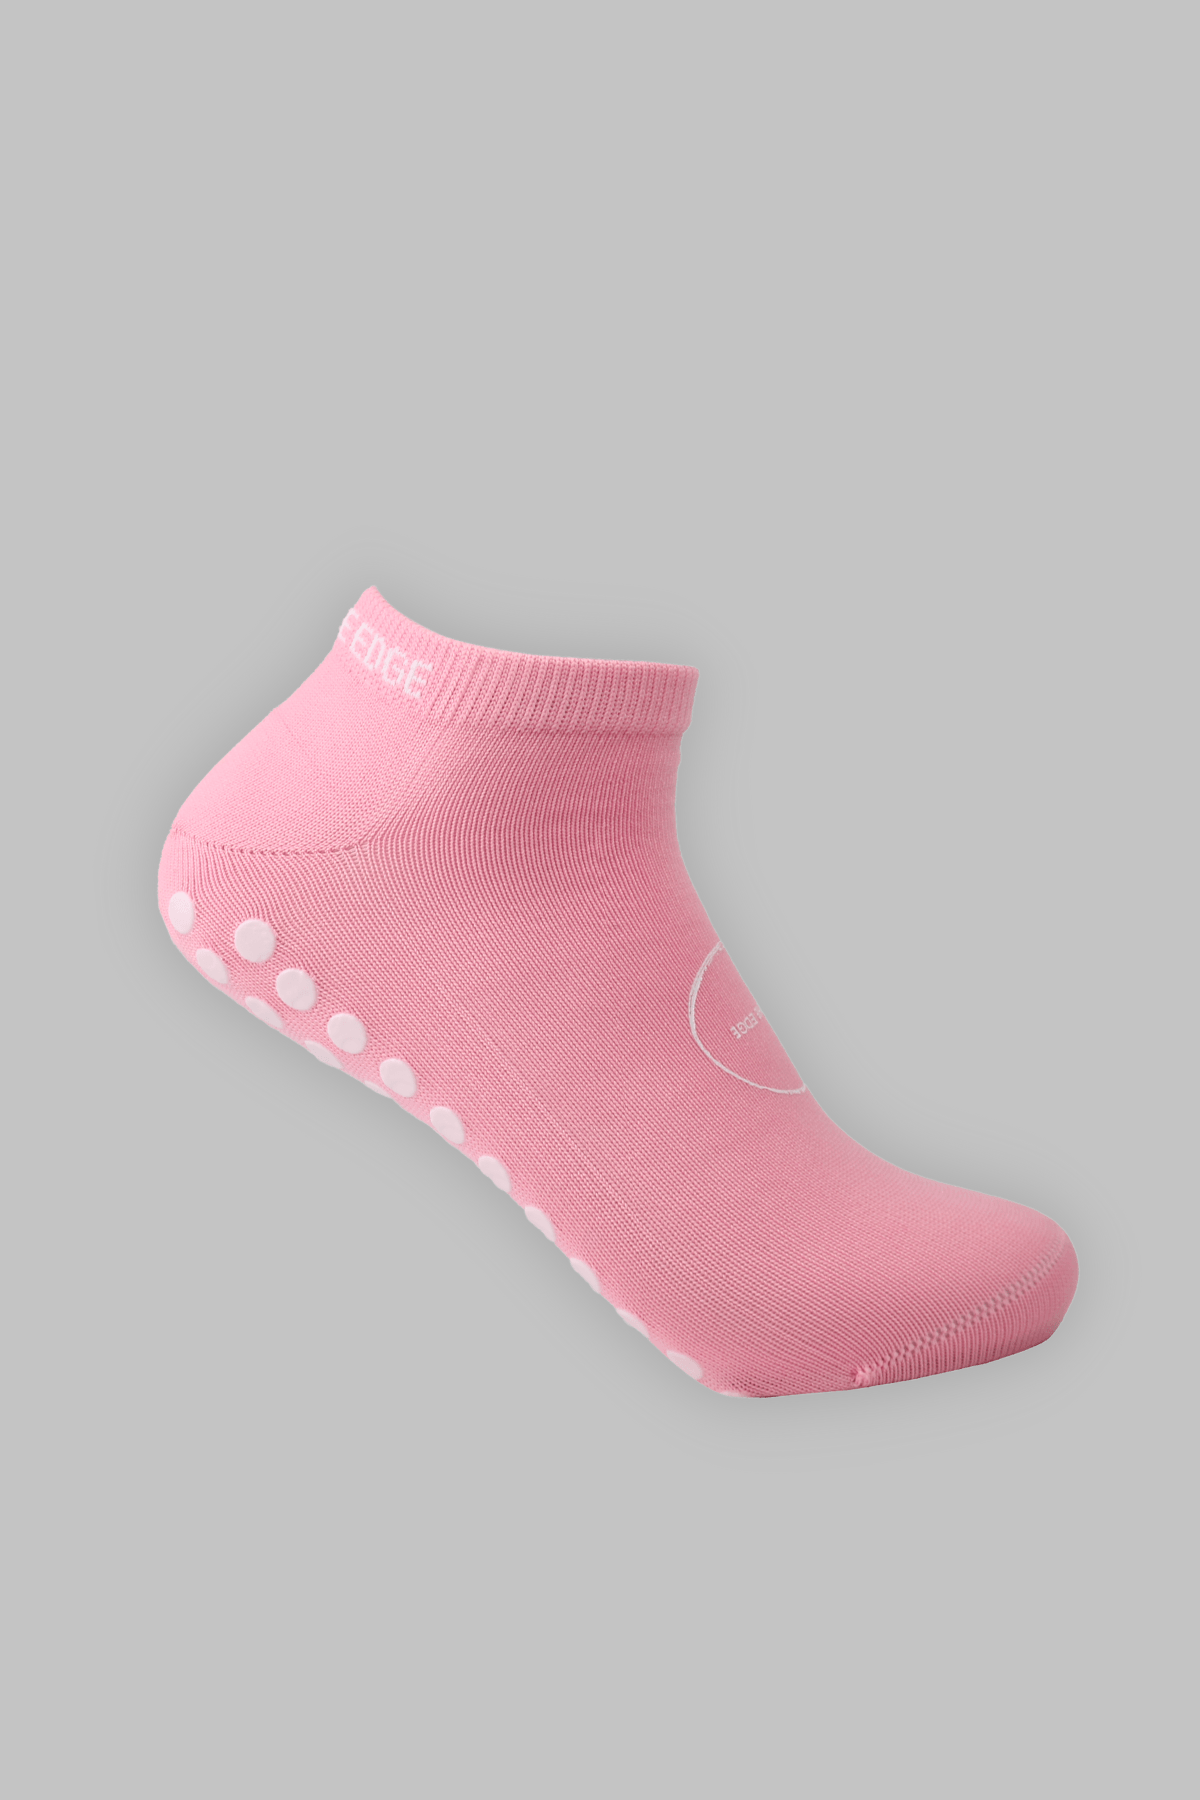 Ankle Grip Socks - Pink - Gain The Edge EU